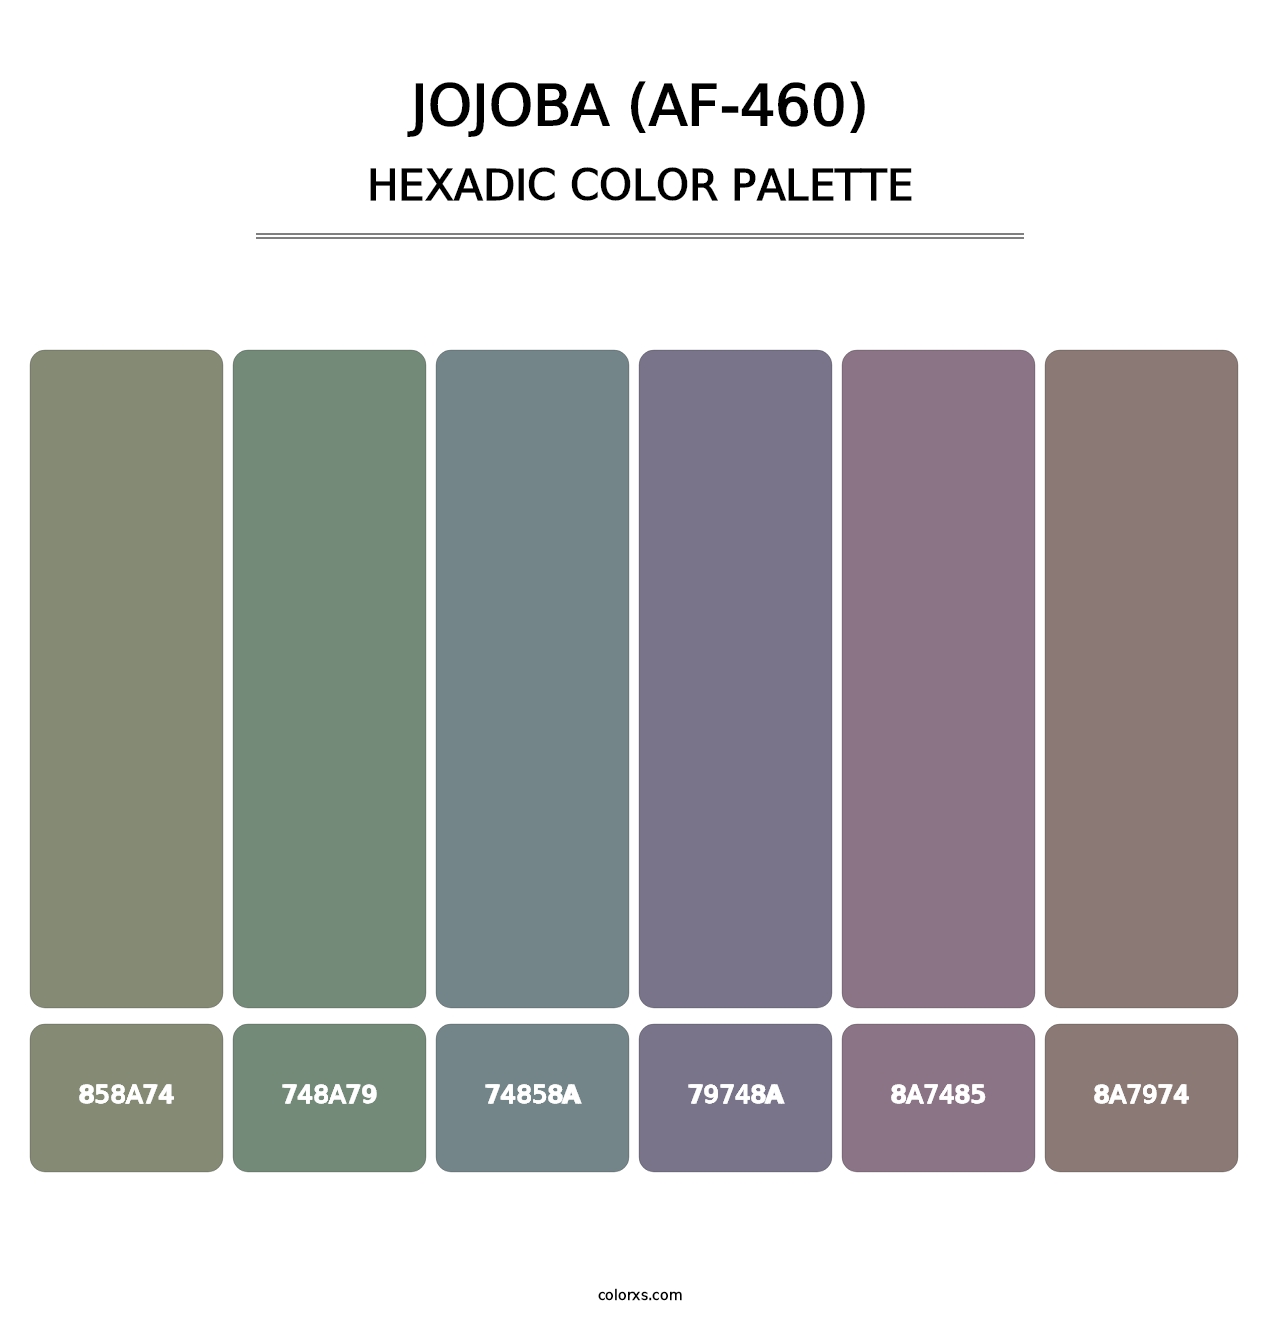 Jojoba (AF-460) - Hexadic Color Palette